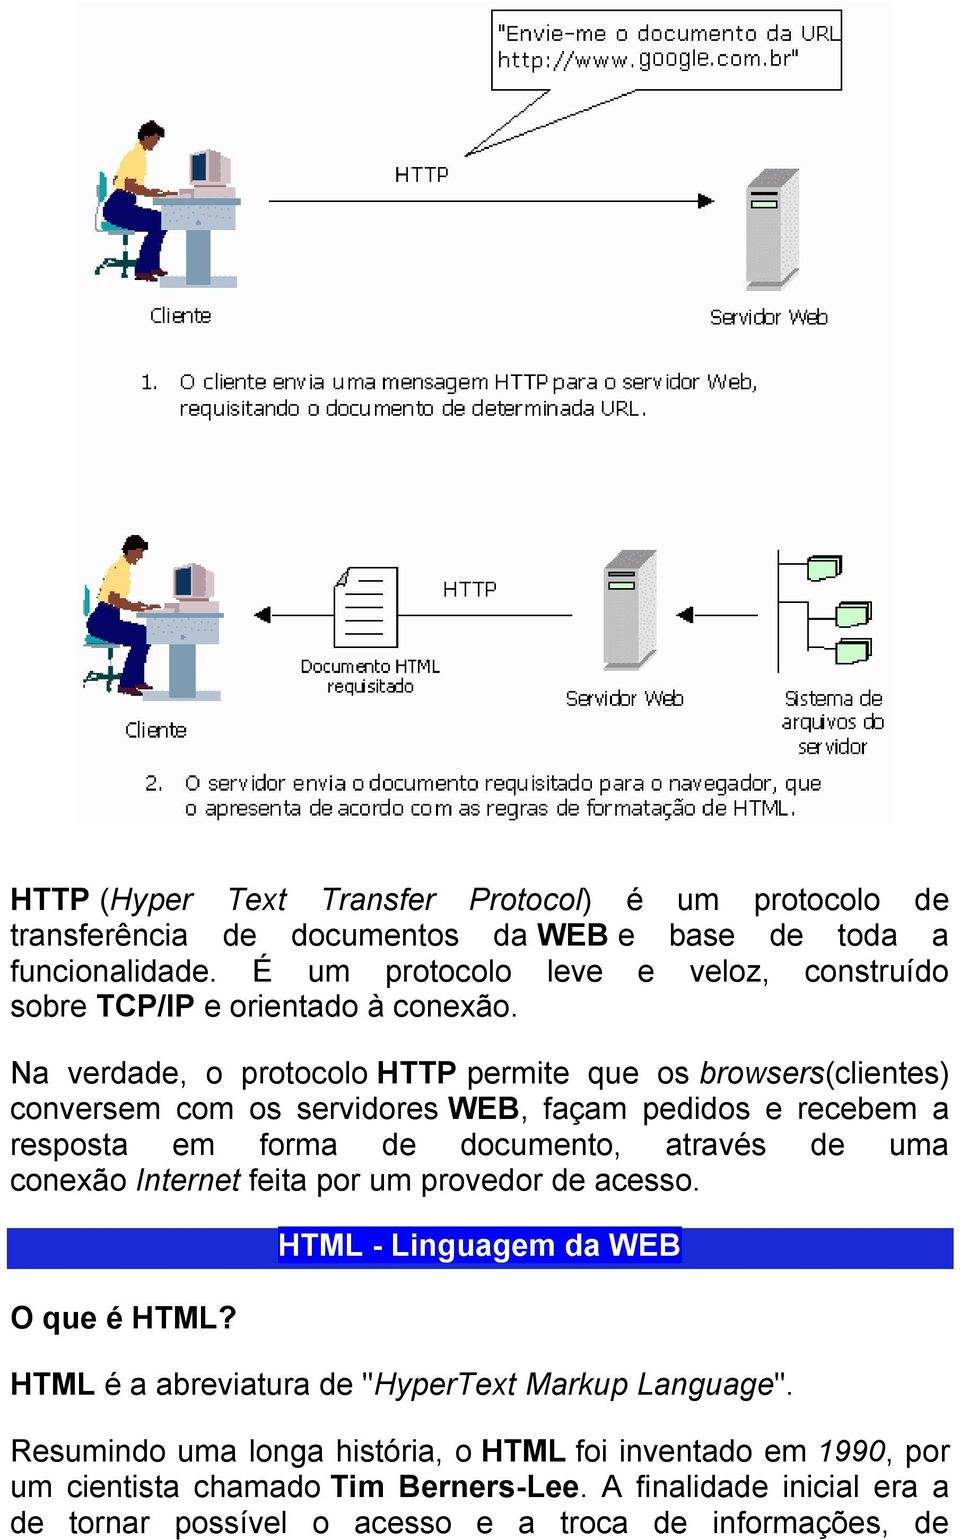 Na verdade, o protocolo HTTP permite que os browsers(clientes) conversem com os servidores WEB, façam pedidos e recebem a resposta em forma de documento, através de uma